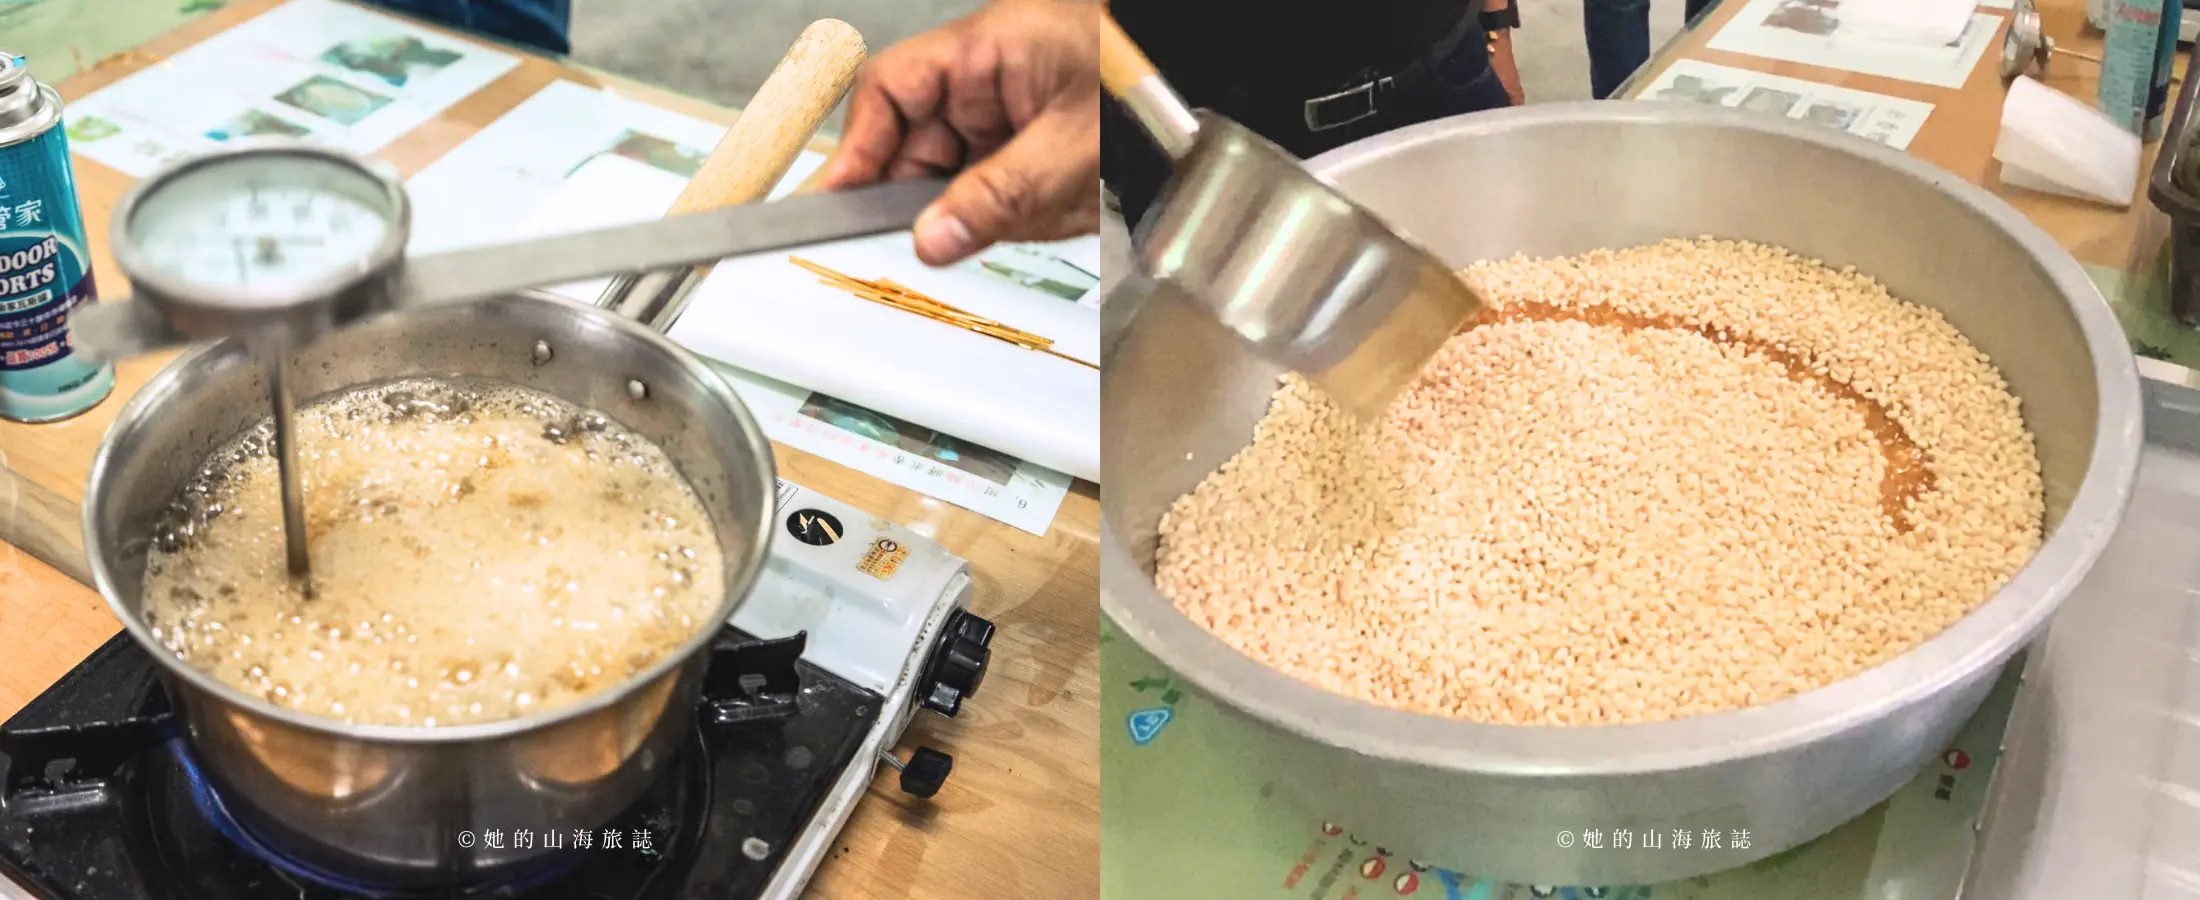 (左) 製作糖漿 (右) 將煮好的糖漿與米香拌勻